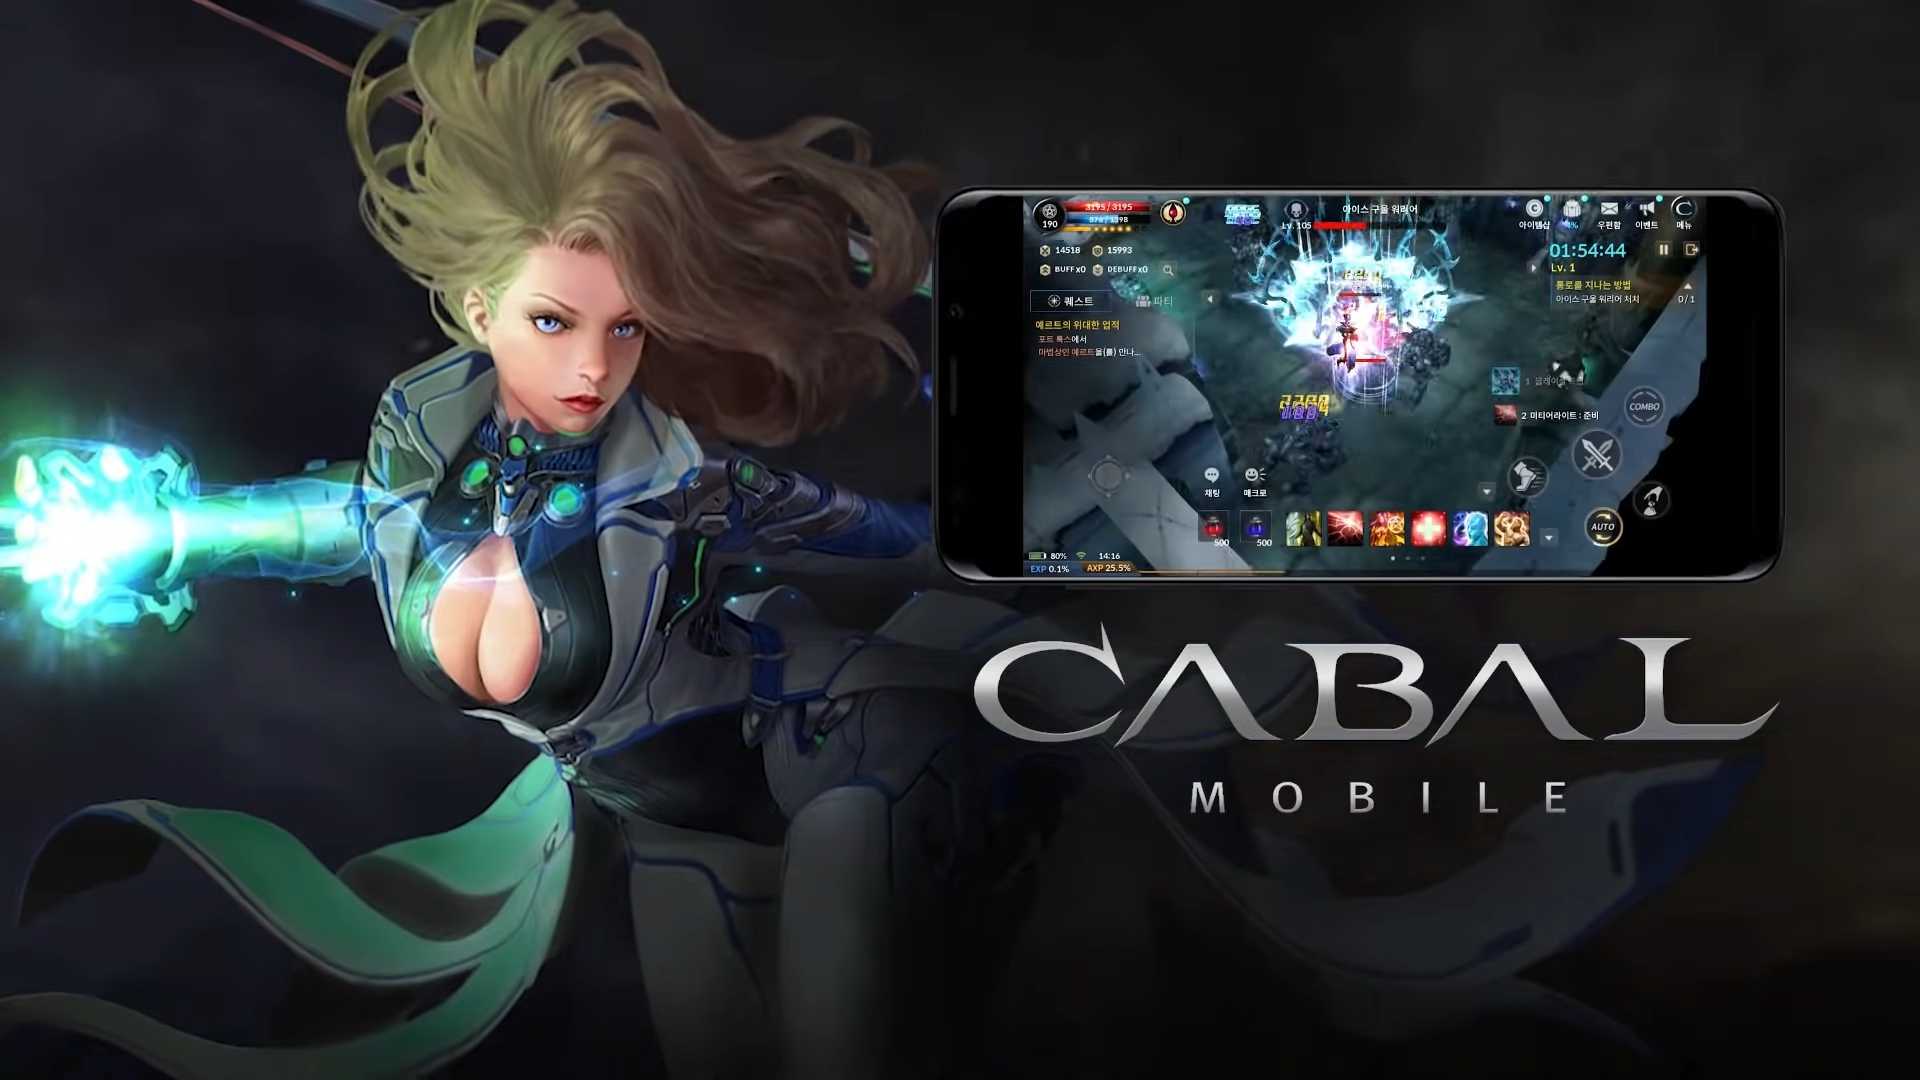 Cabal Mobile chính thức phát hành tại Việt Nam sau bao ngày chờ đợi